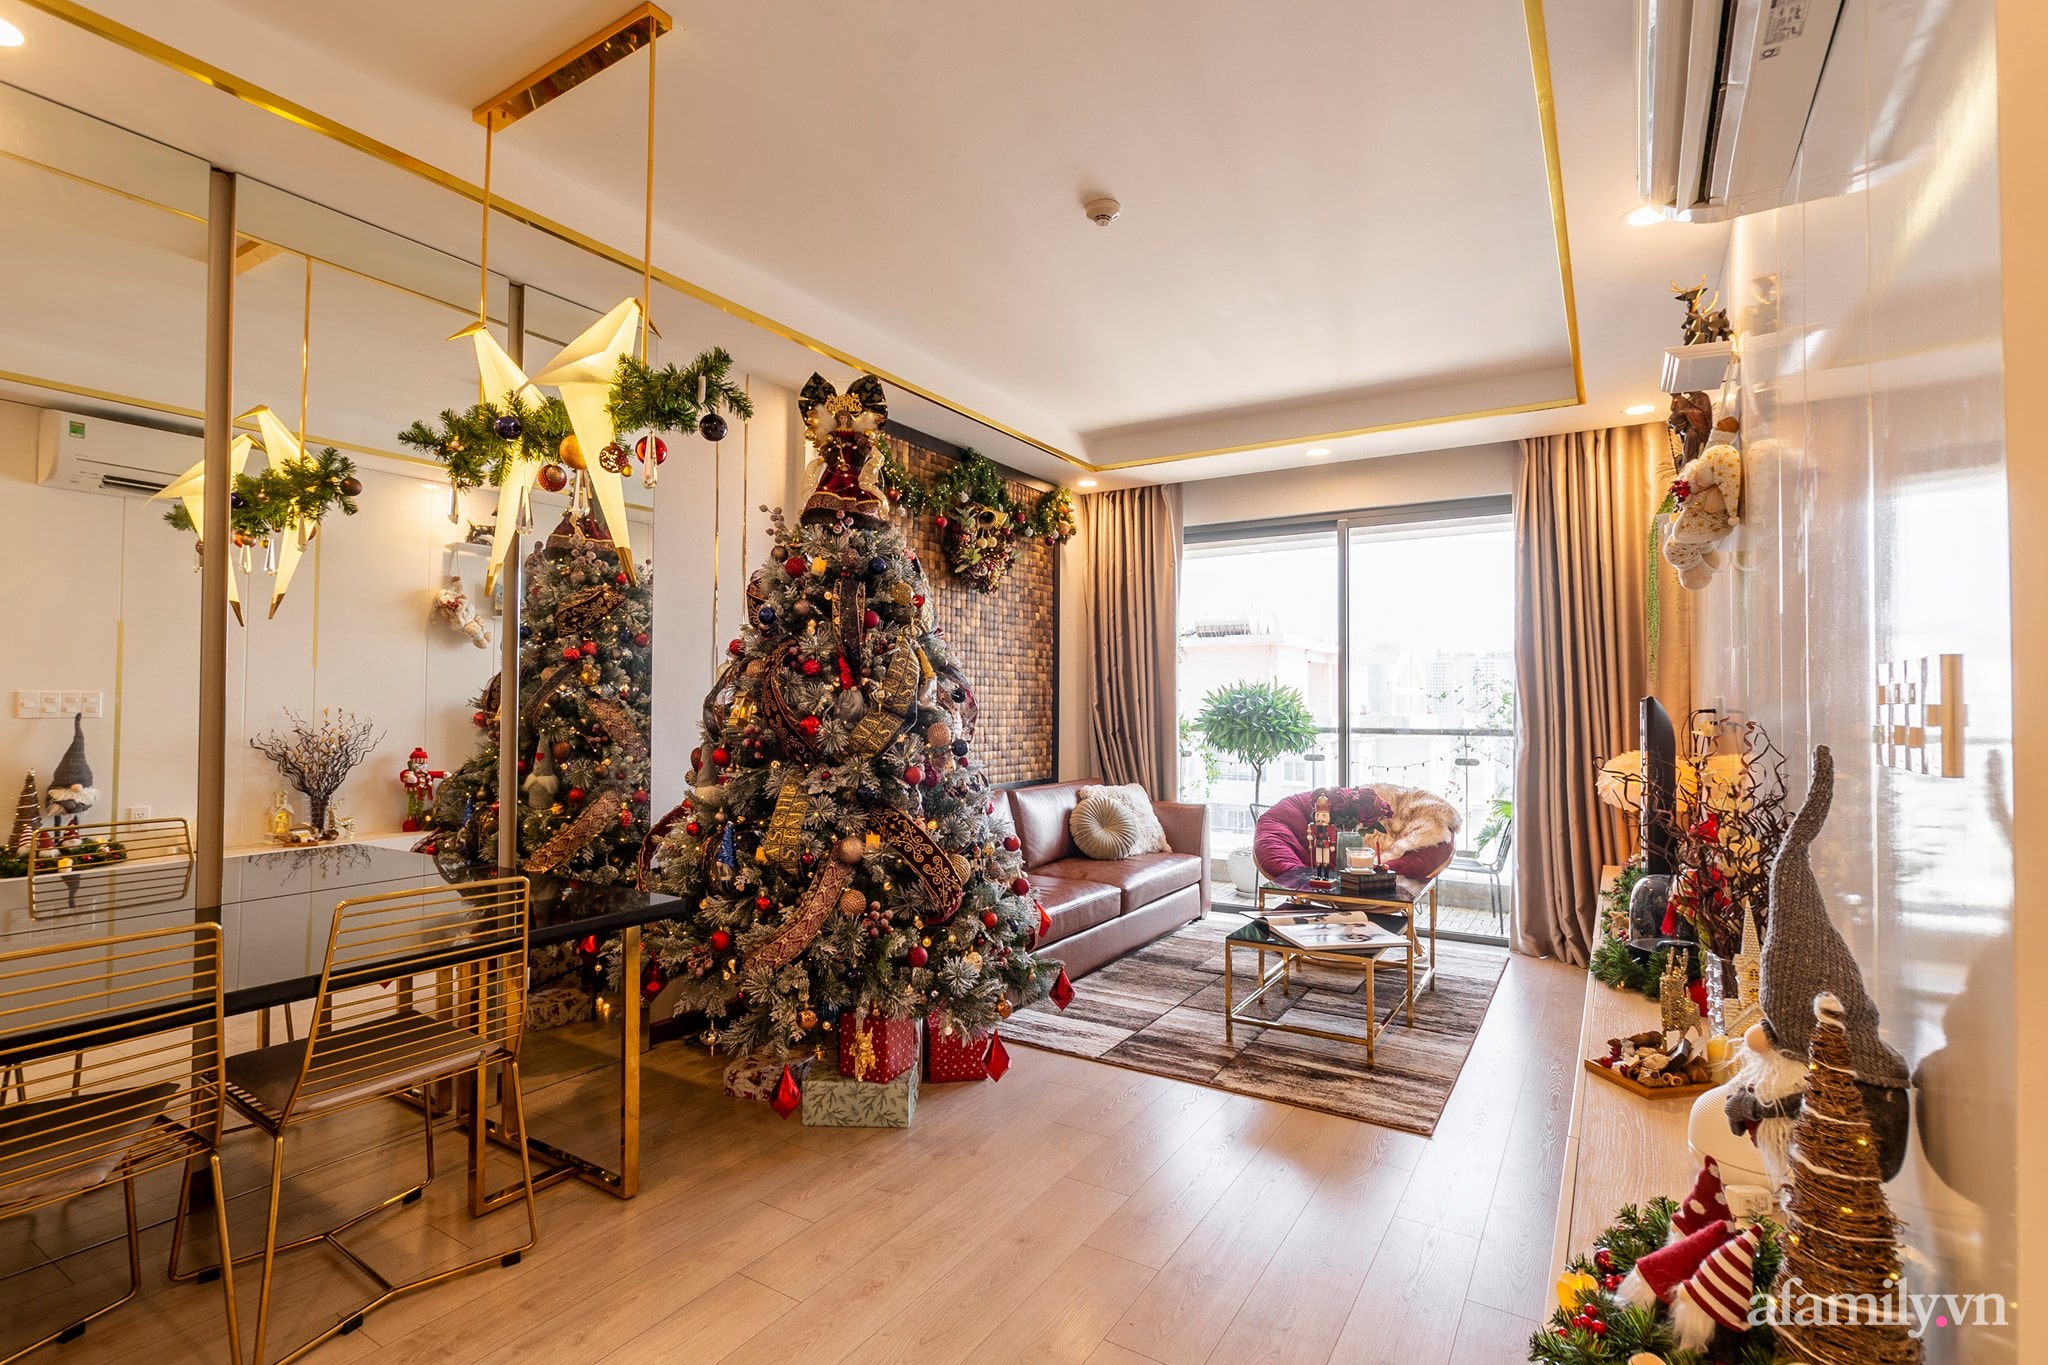 Chi 50 triệu đồng mua đồ trang trí, căn hộ Sài Gòn đẹp lịm tim đón Giáng sinh đang về - Ảnh 1.